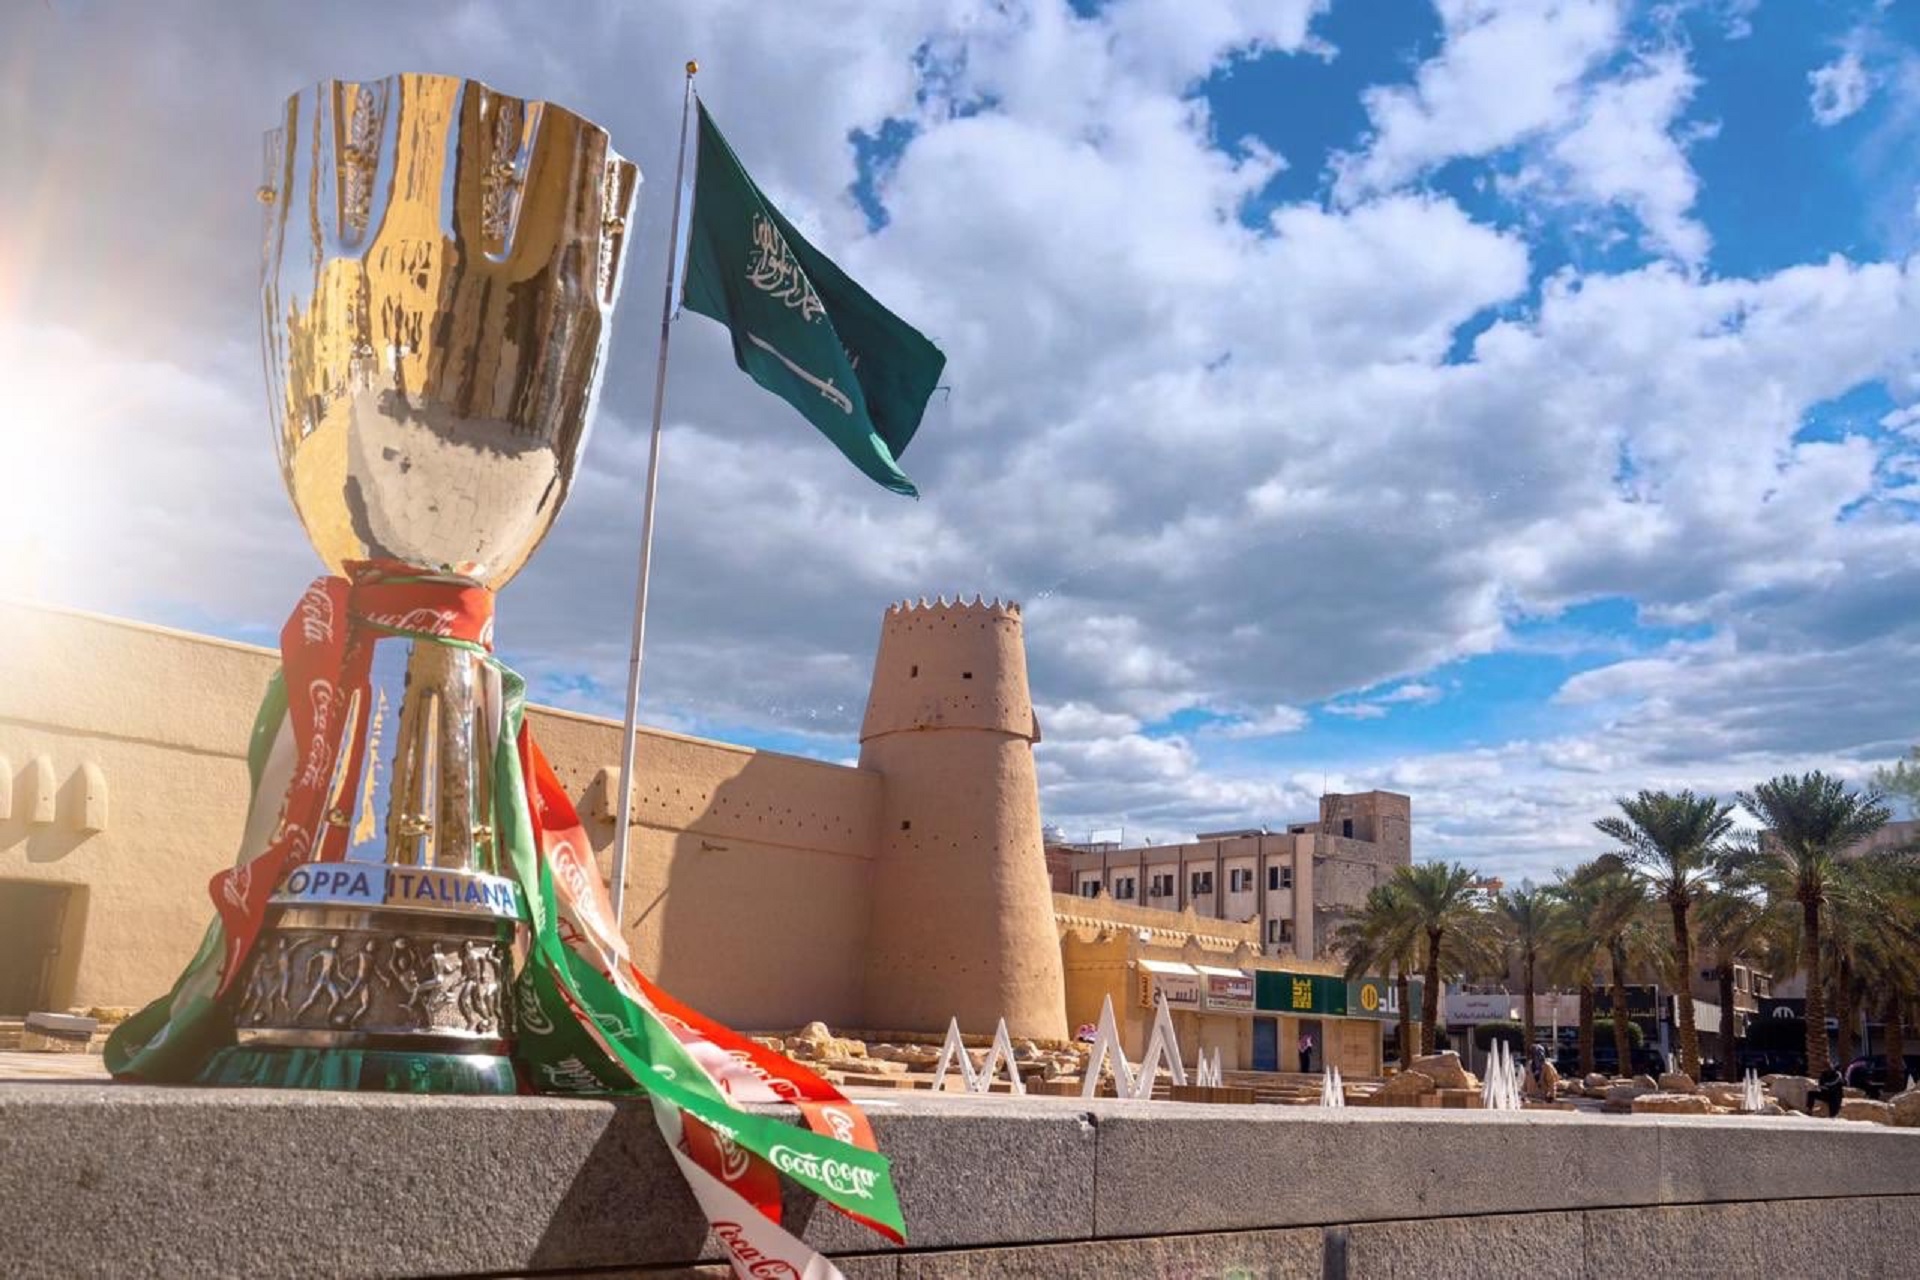 كأس السوبر الإيطالي يصل الرياض - المواطن